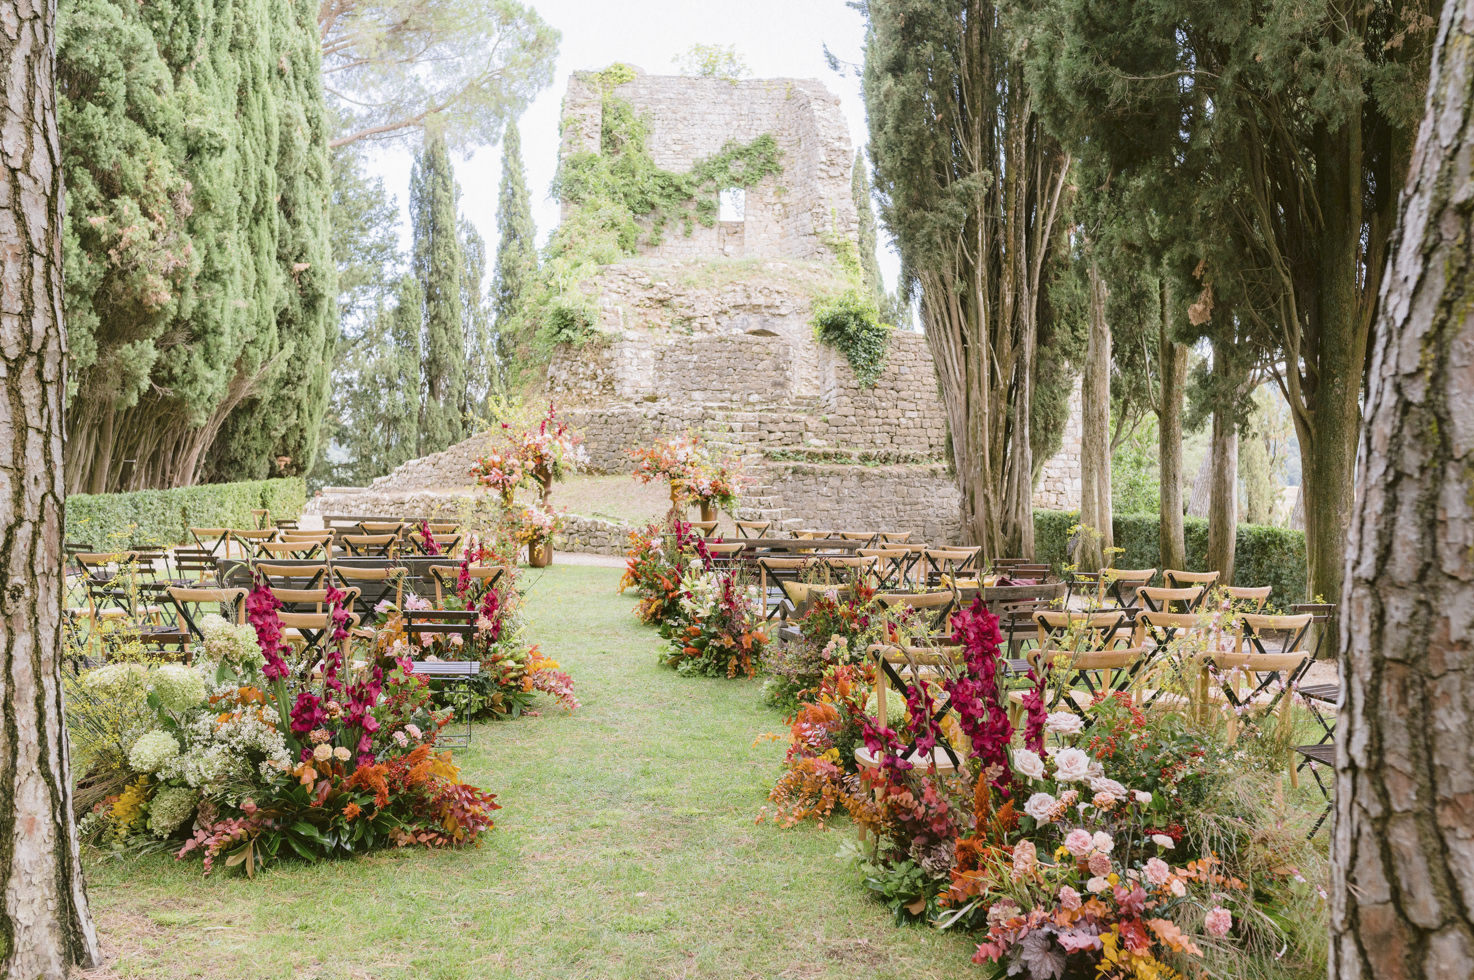 Wedding ceremony in the gardens of Castiglion del Bosco